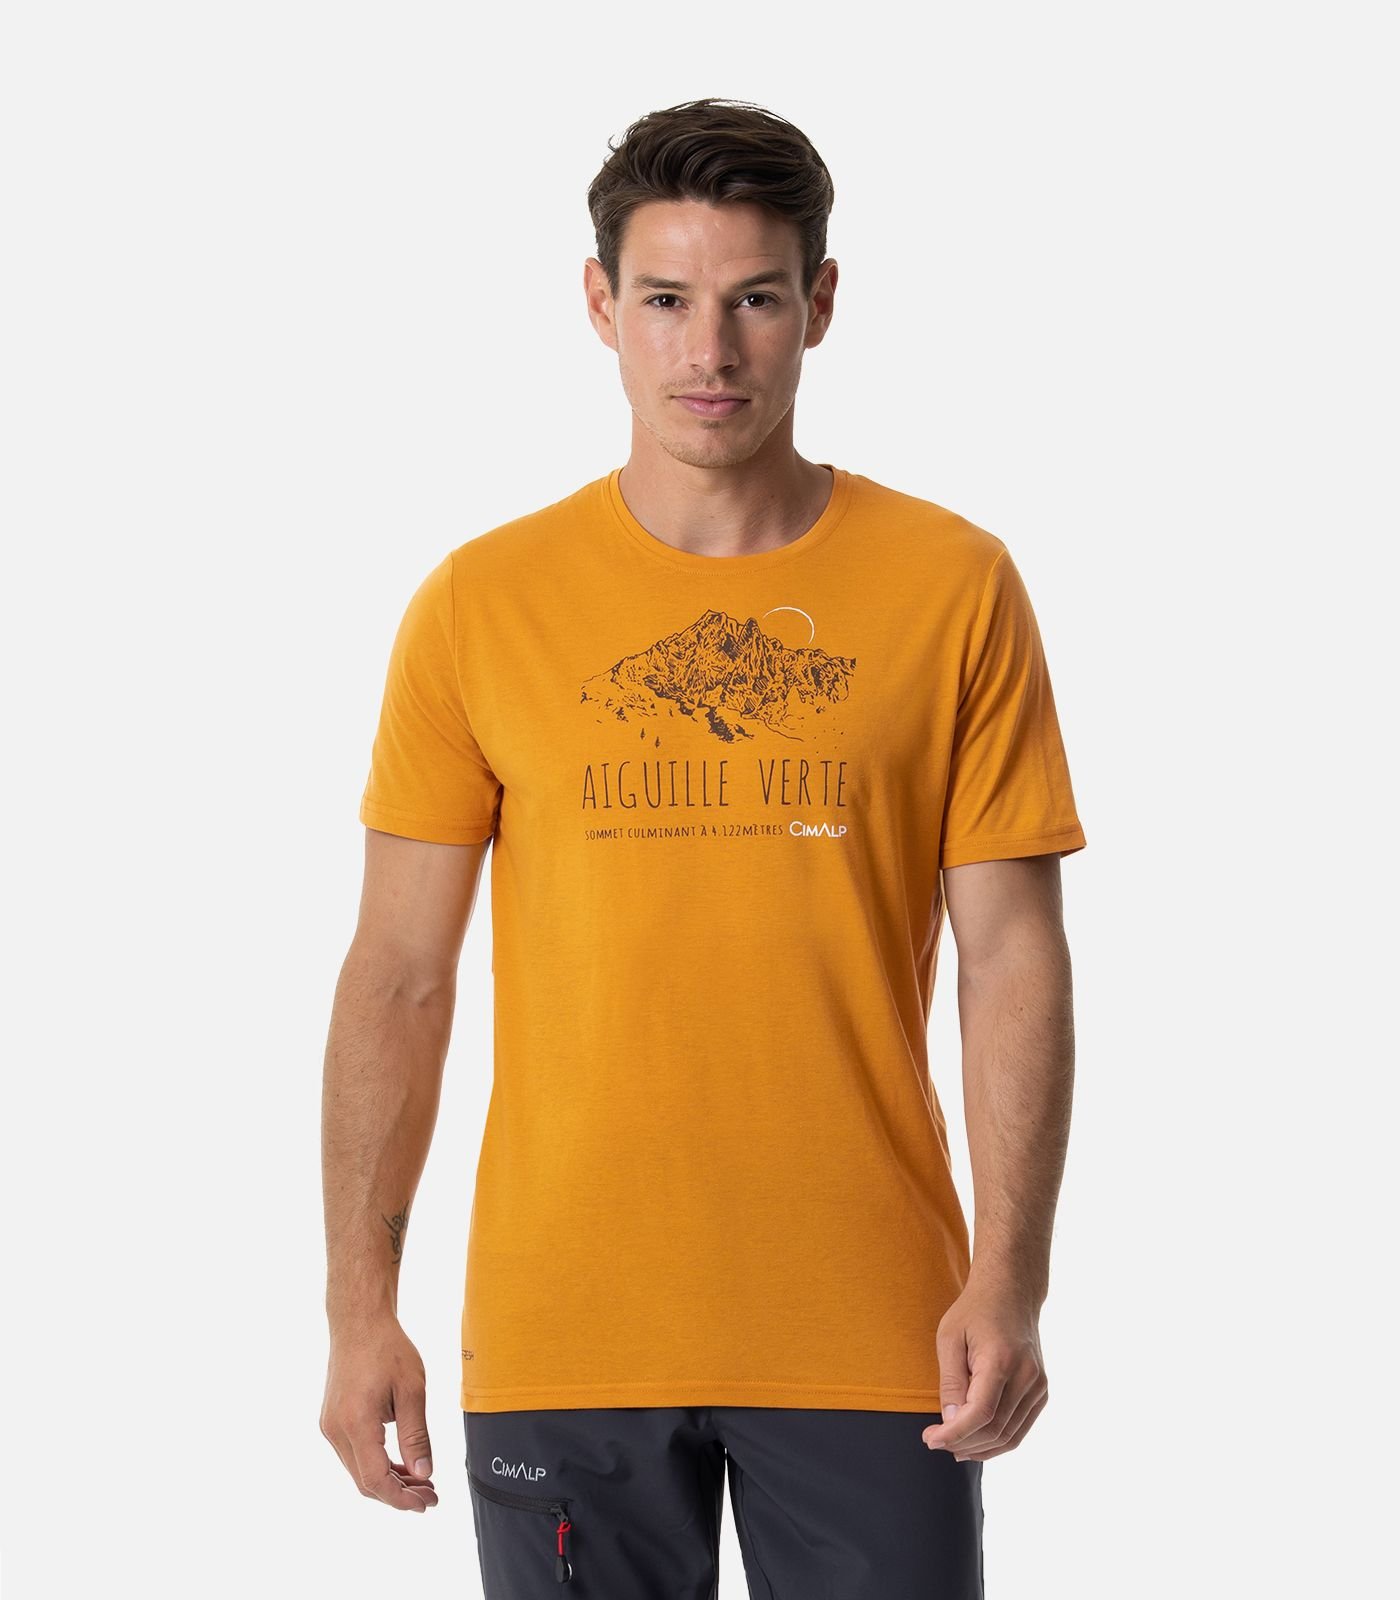 Cimalp T-shirt